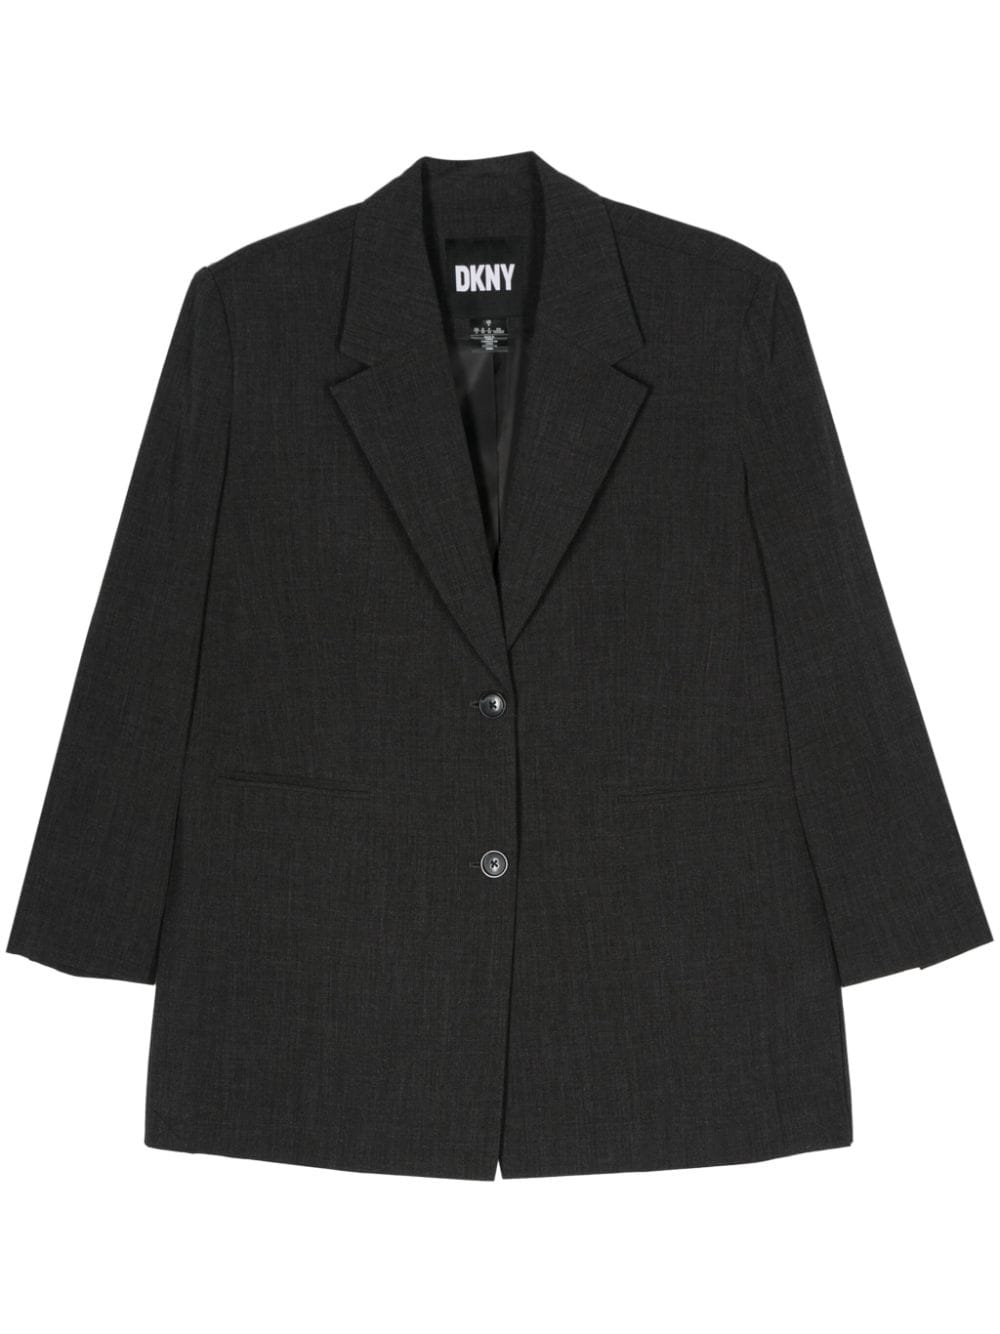 DKNY mélange twill blazer - Grey von DKNY